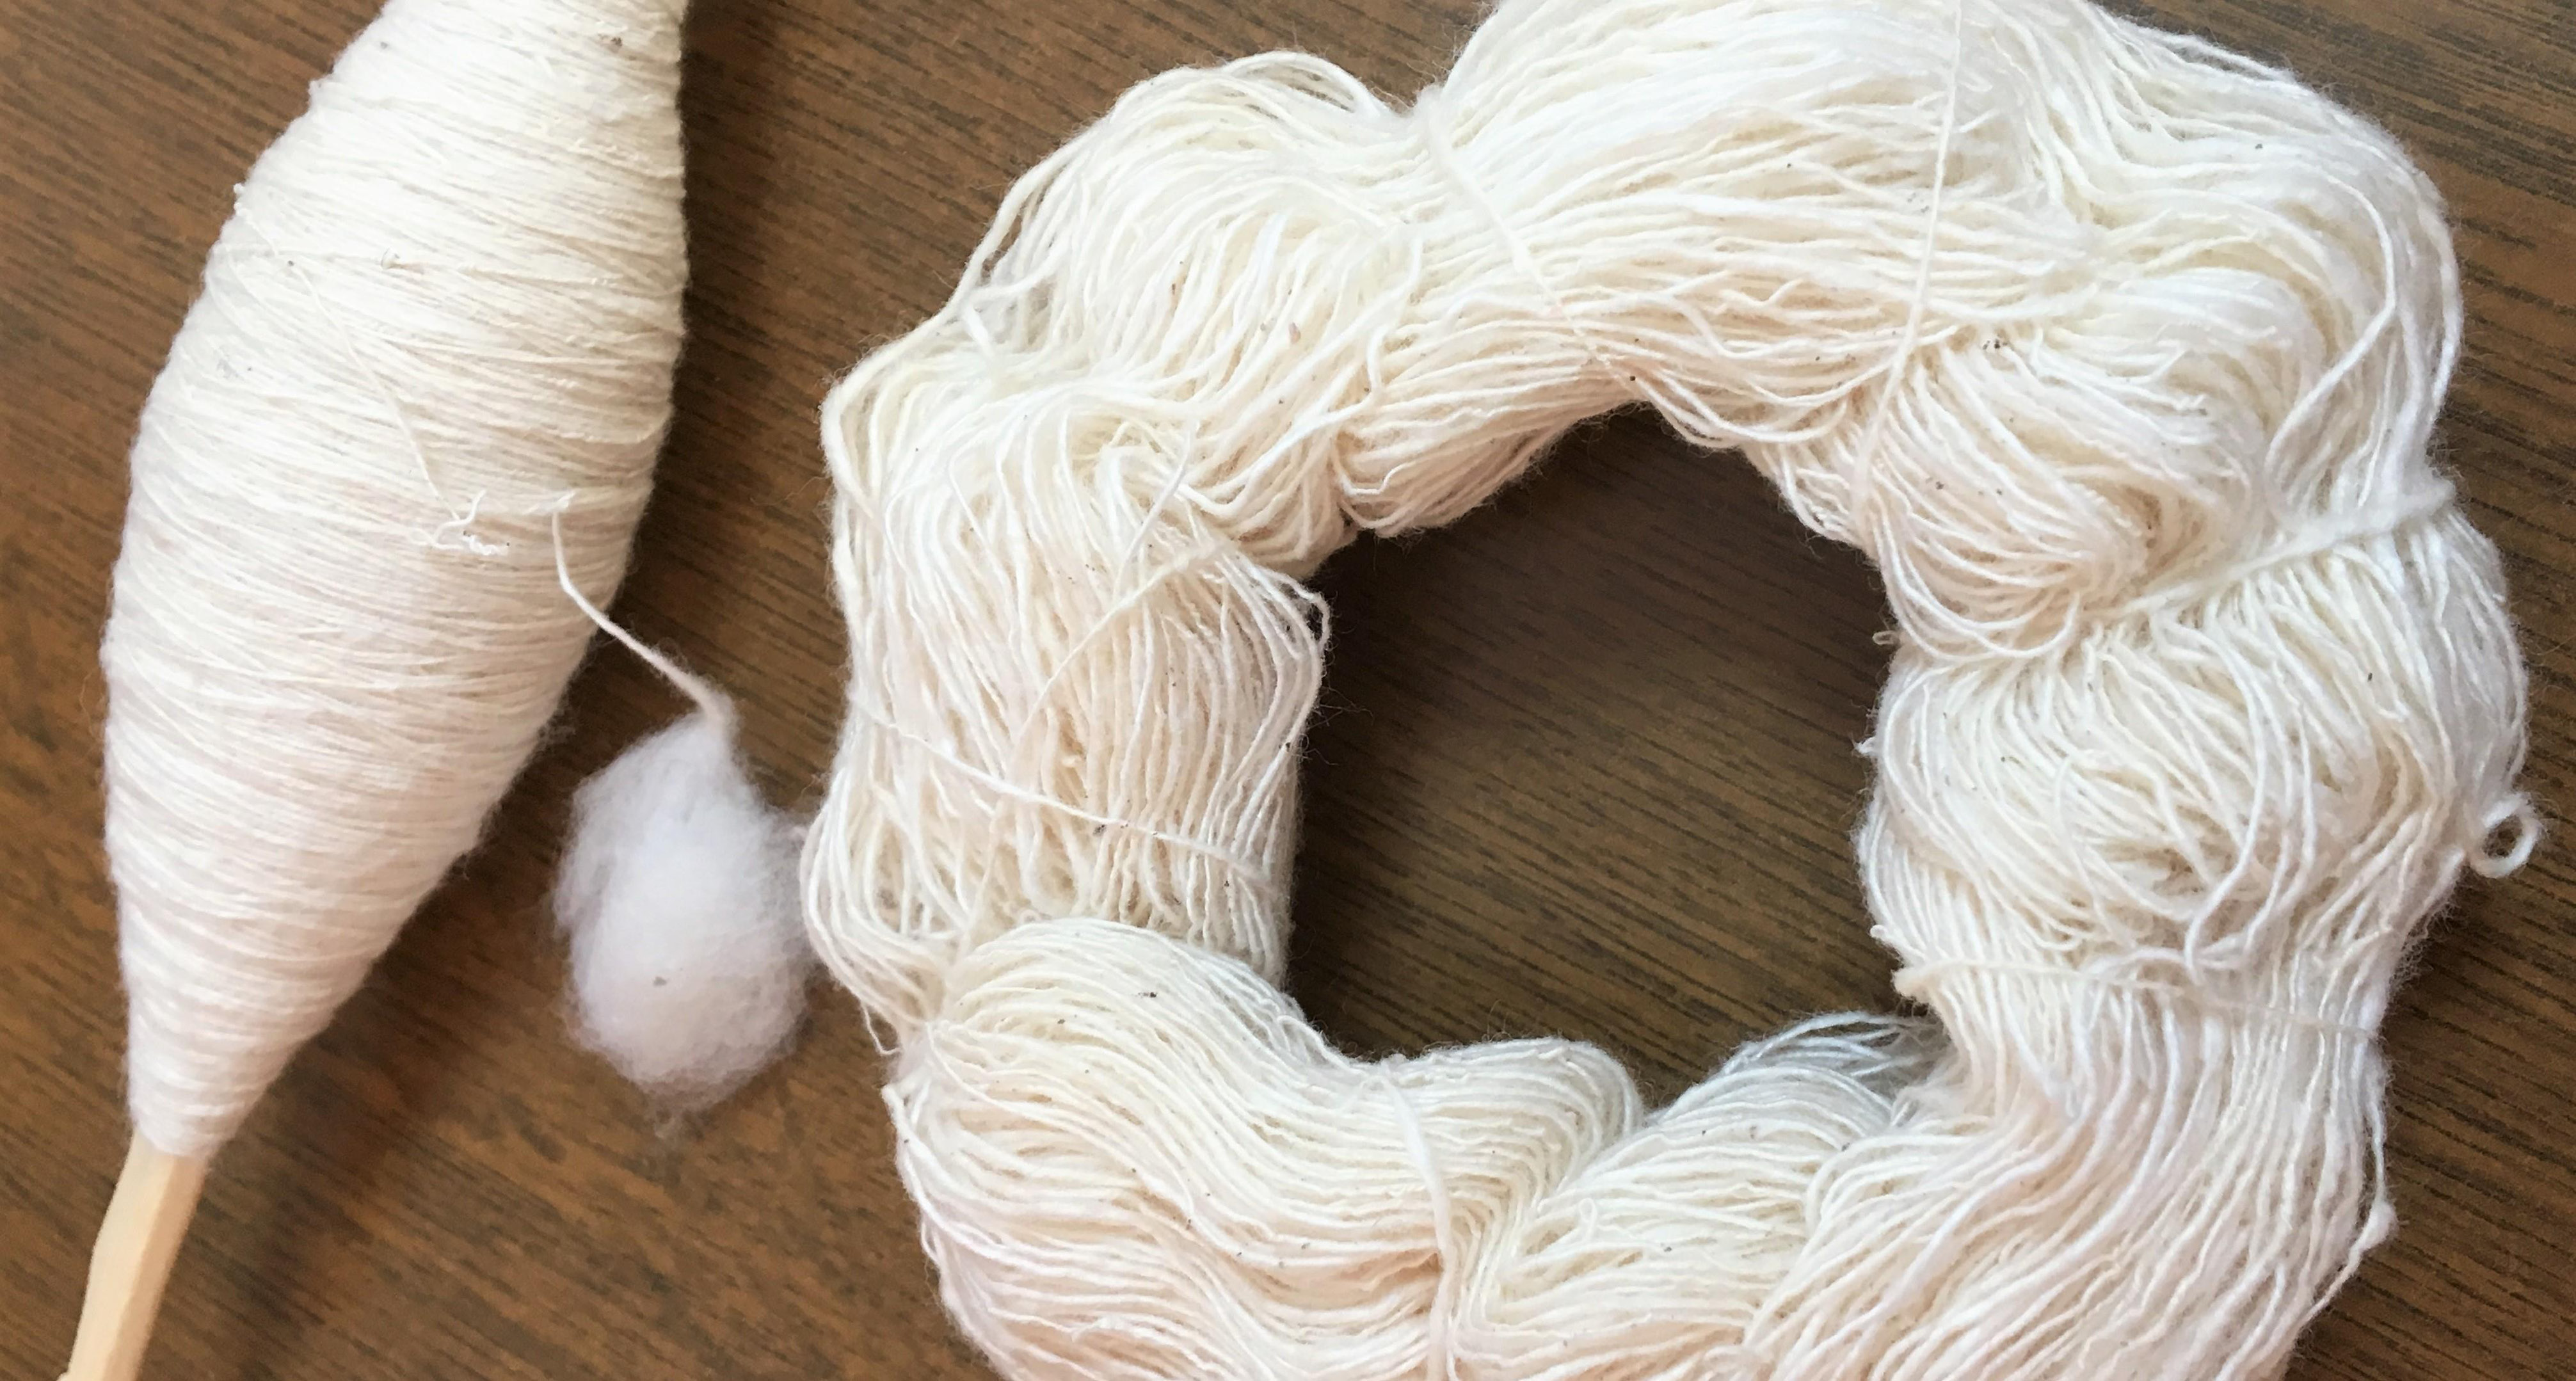 綿花 から 糸 を 作る